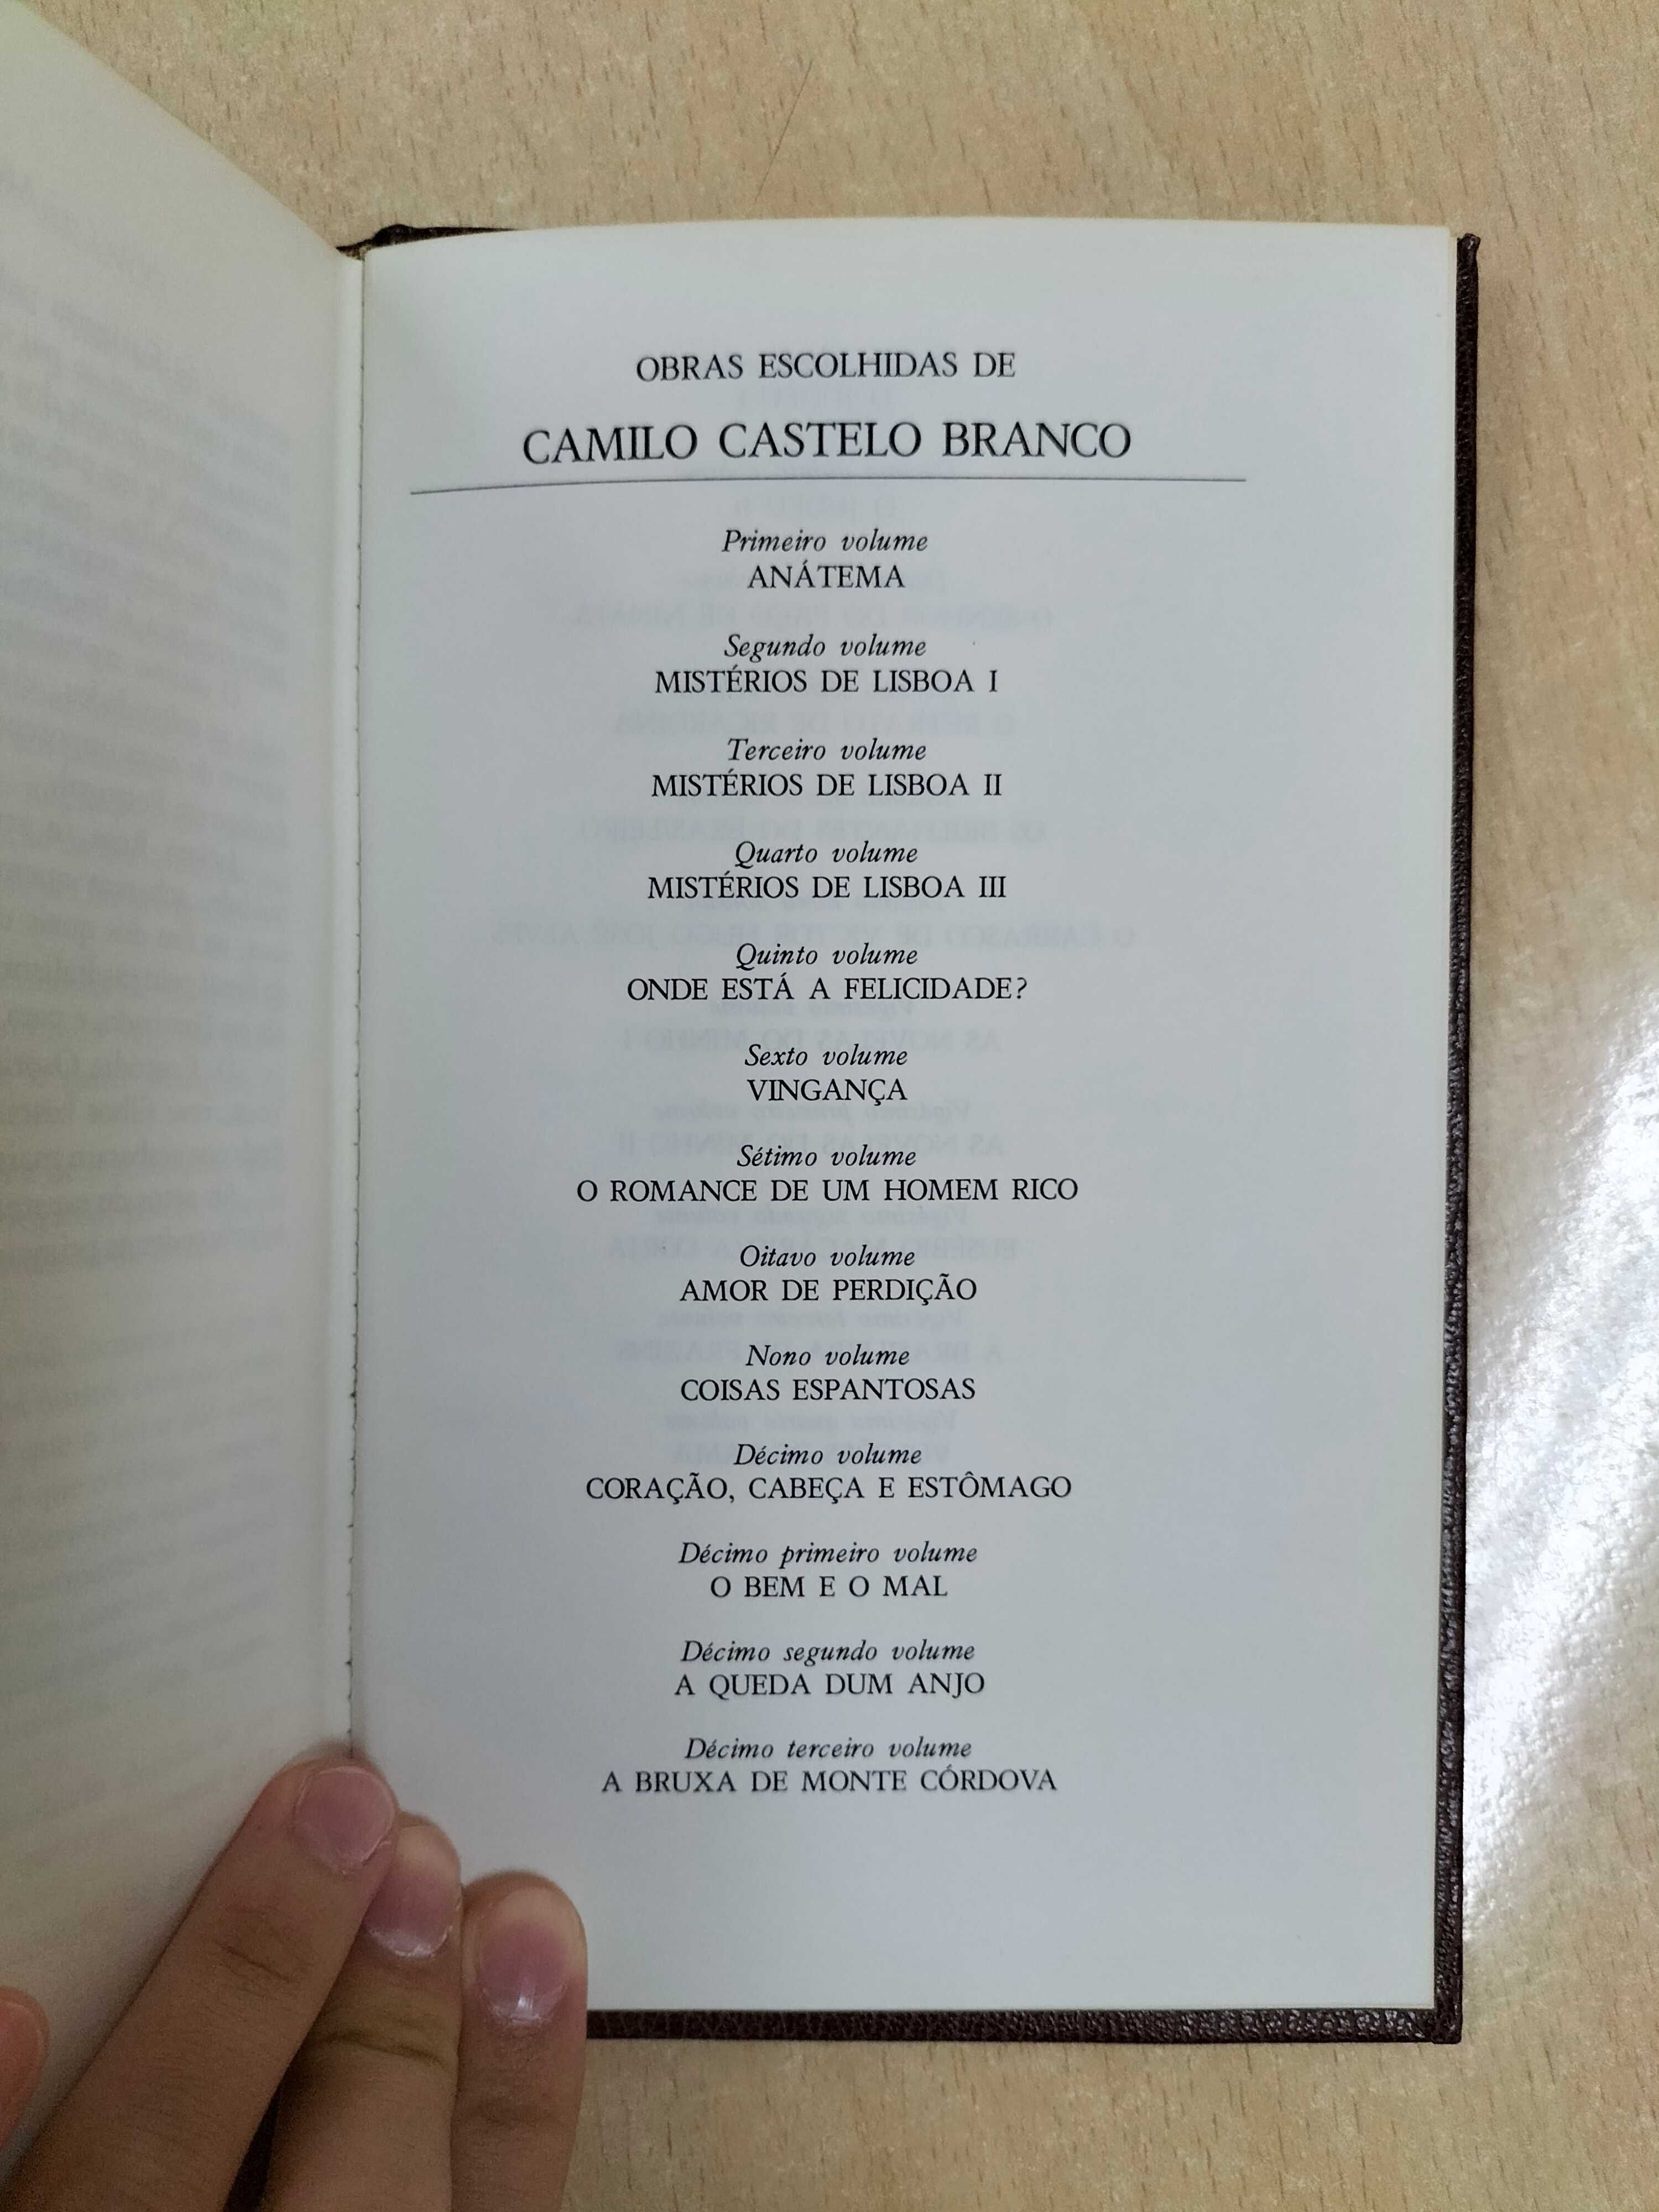 Camilo Castelo Branco (Obras Escolhidas)